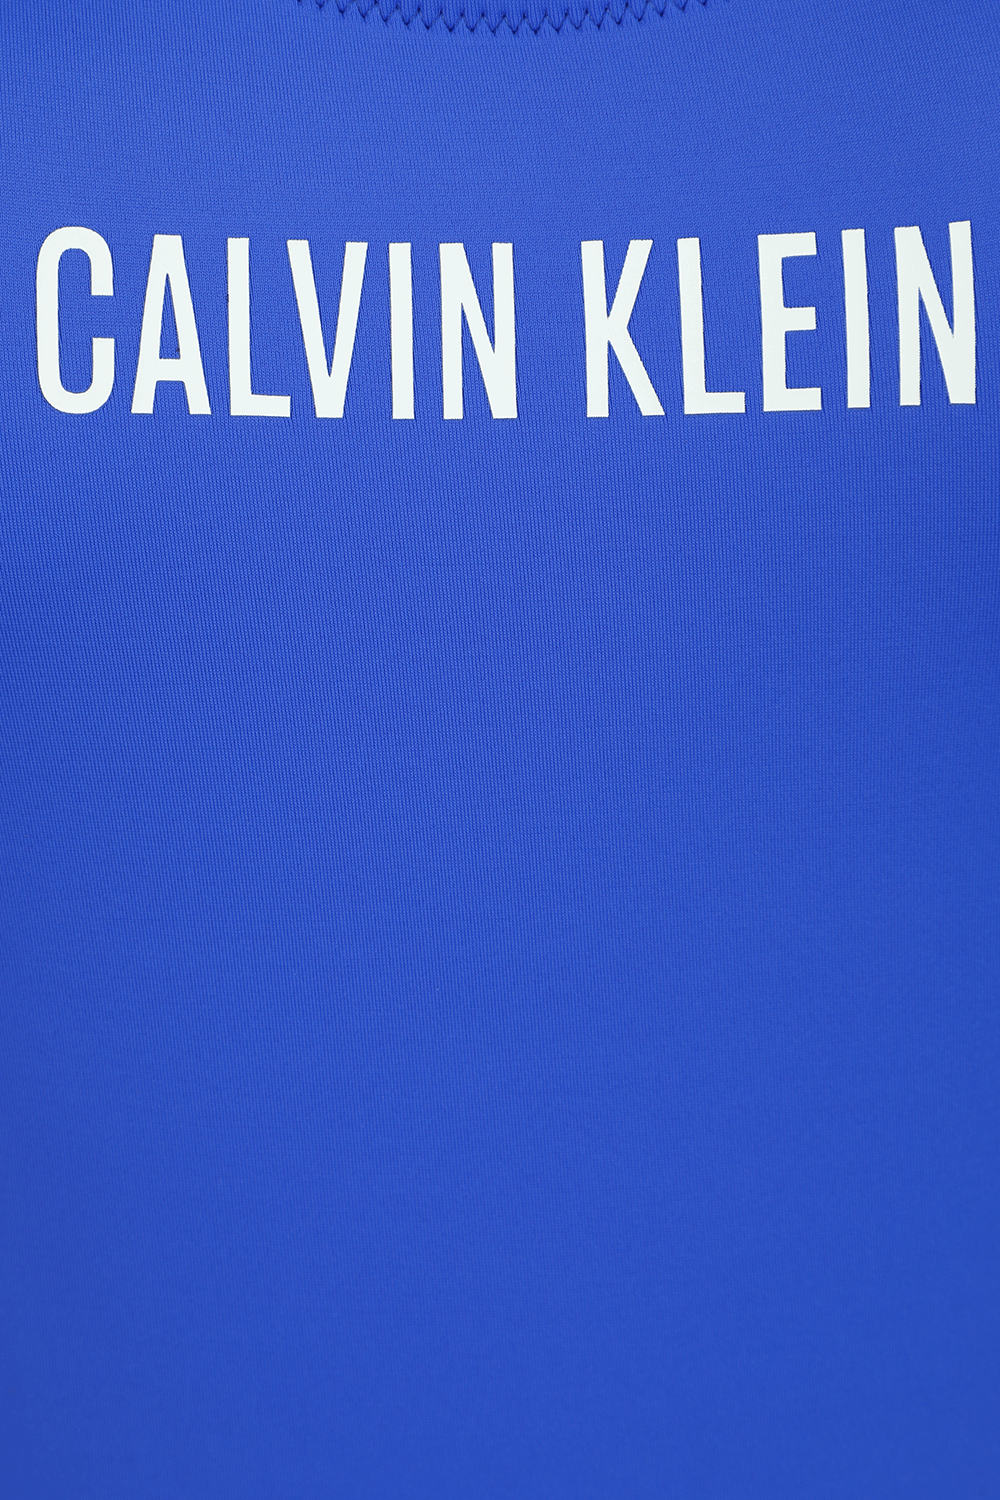 בגד ים שלם כחול עם לוגו CALVIN KLEIN